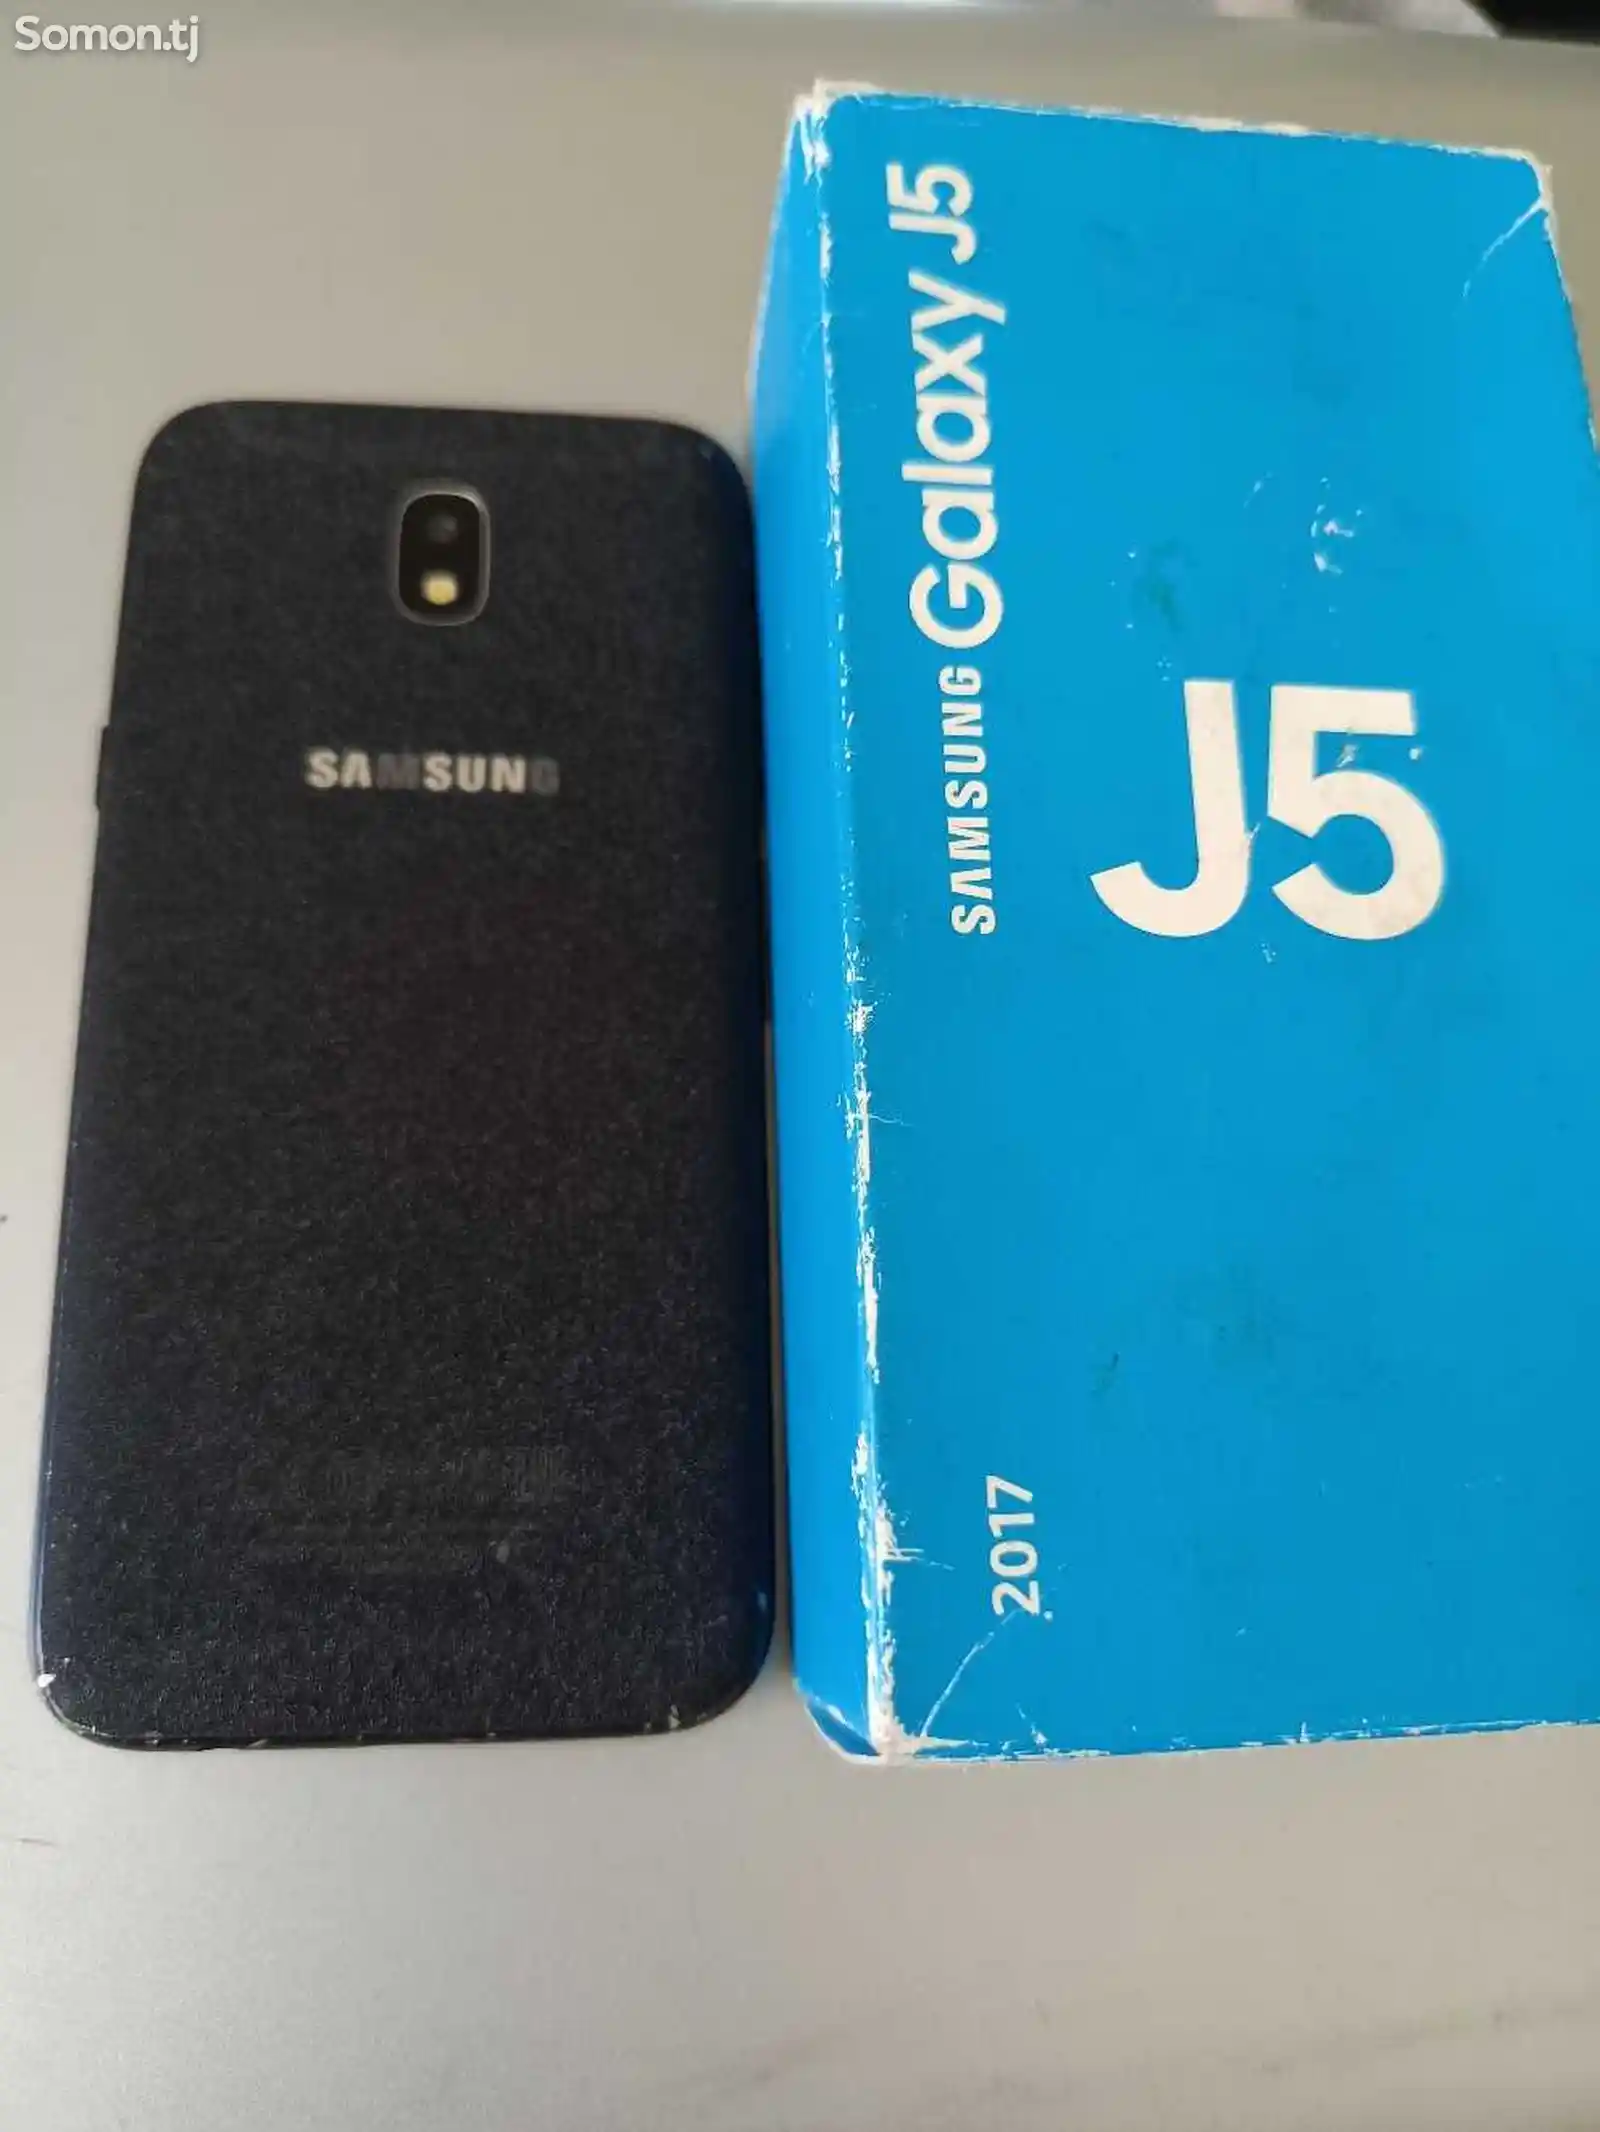 Samsung Galaxy J5-1